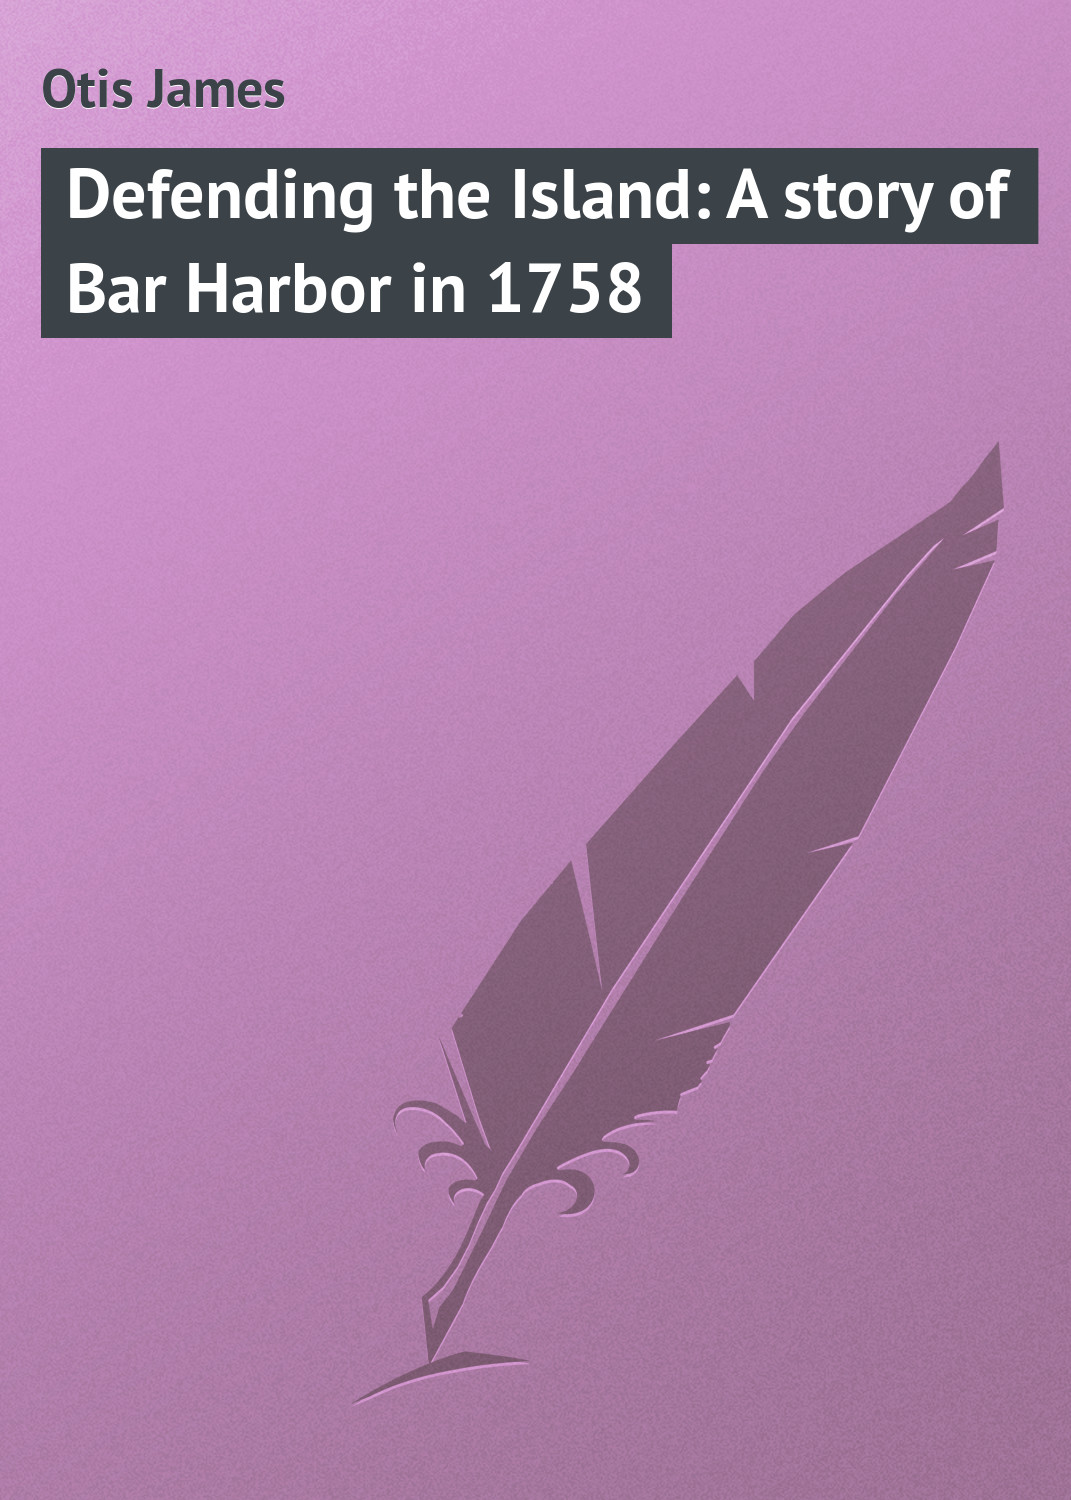 Книга Defending the Island: A story of Bar Harbor in 1758 из серии , созданная James Otis, может относится к жанру Зарубежная классика, Зарубежные детские книги. Стоимость электронной книги Defending the Island: A story of Bar Harbor in 1758 с идентификатором 23148523 составляет 5.99 руб.